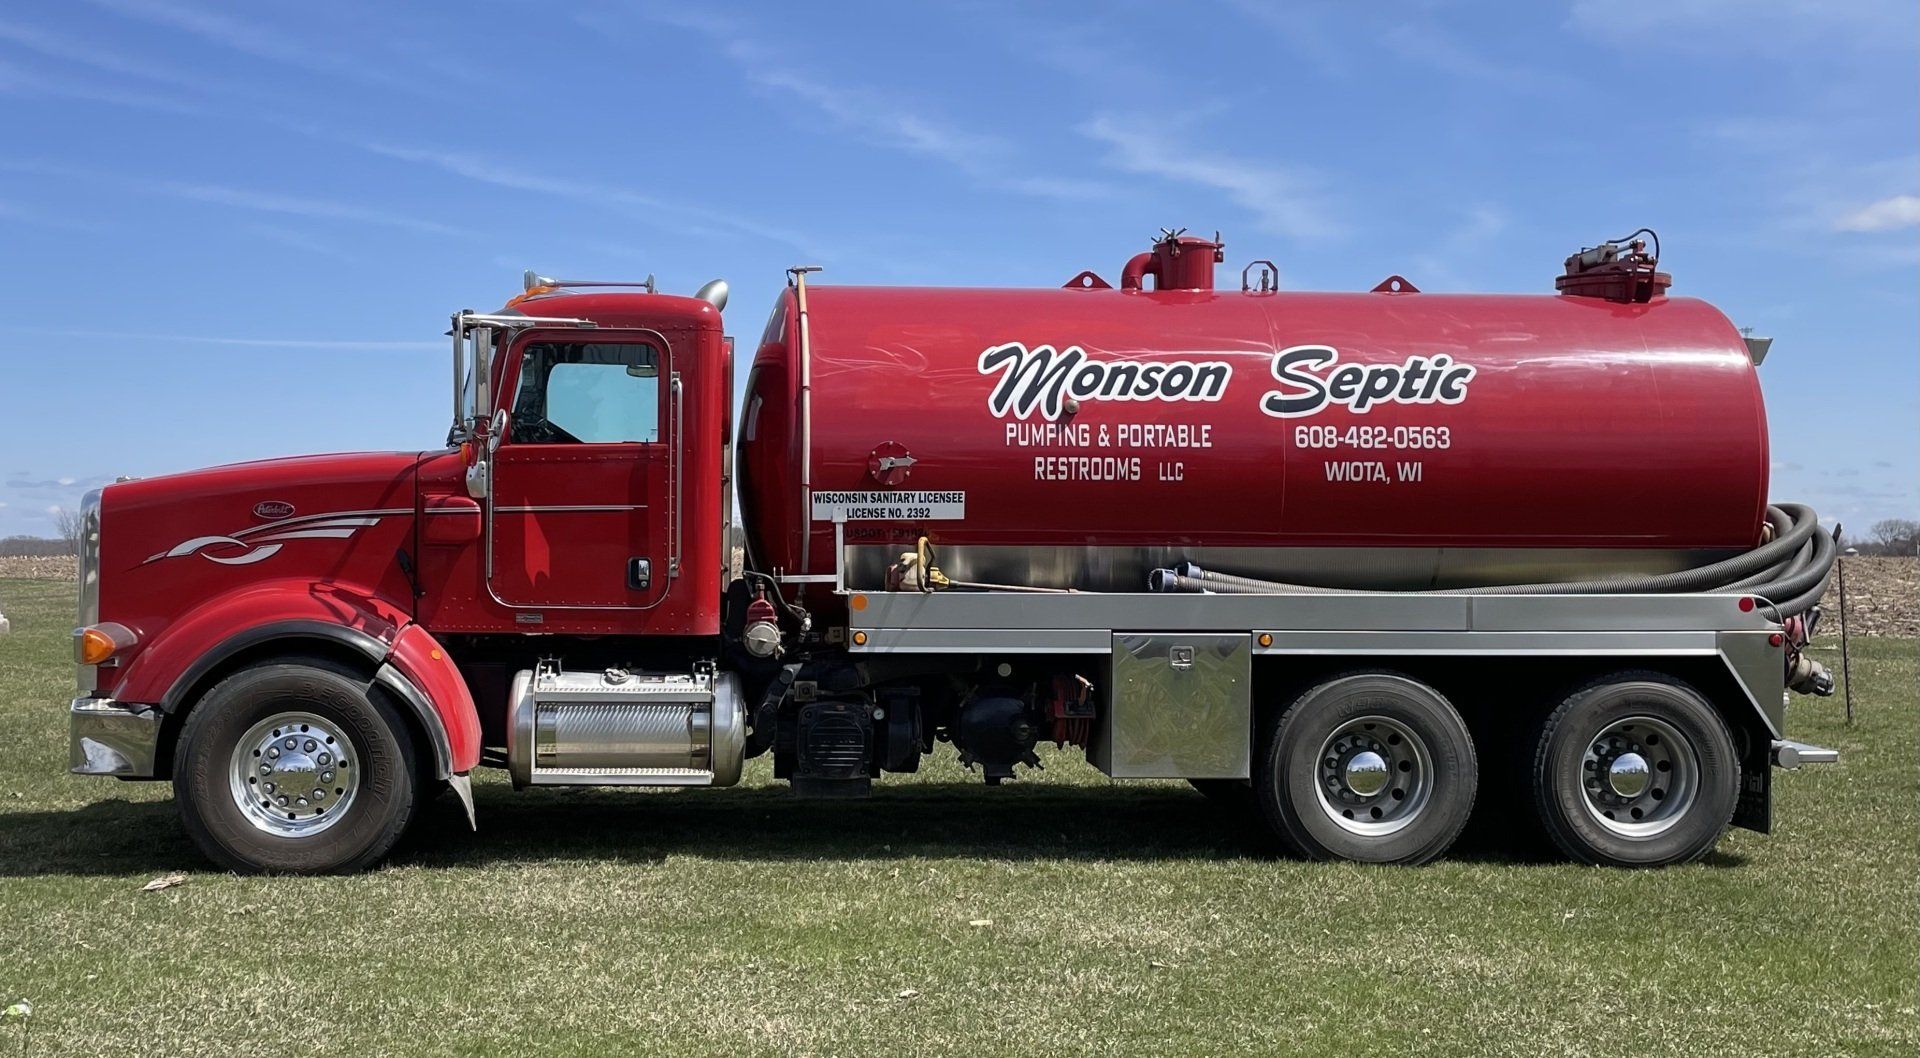 Monson septic truck